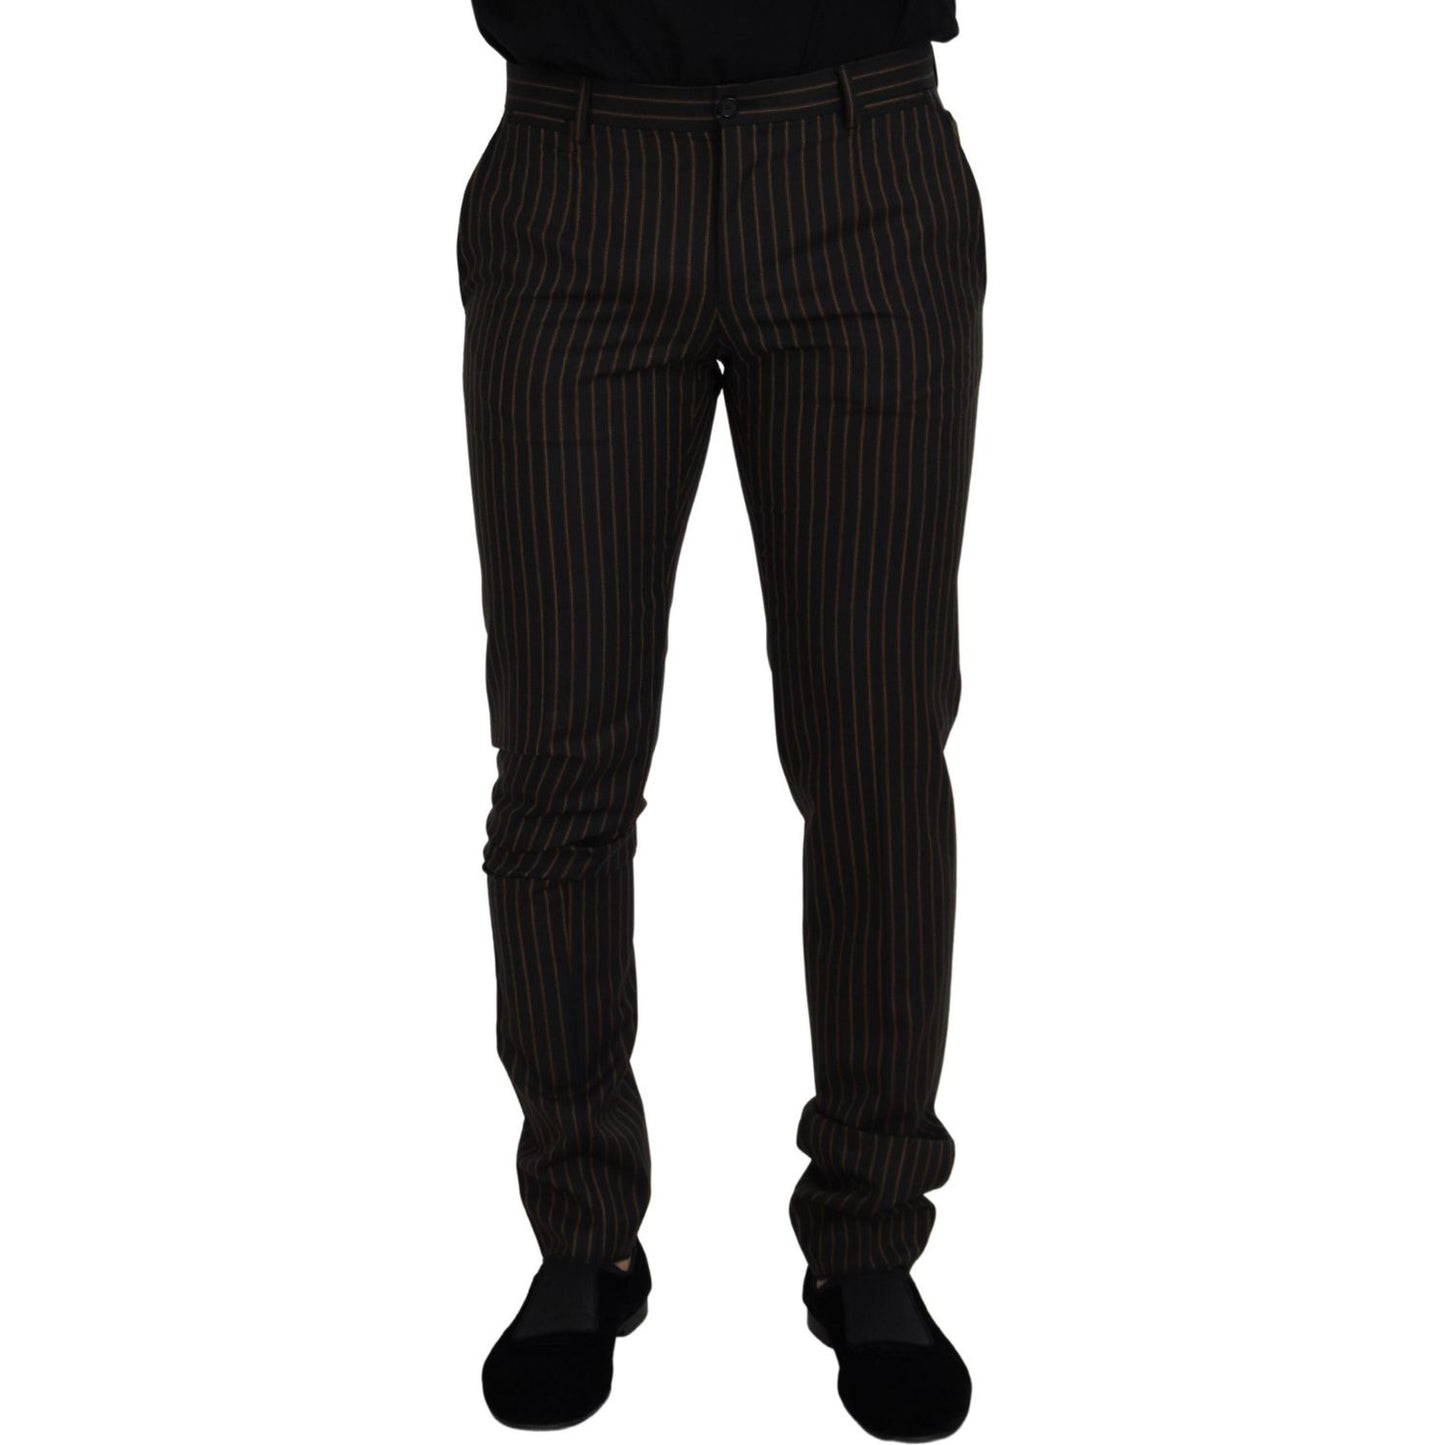 Dolce & Gabbana Elegant Striped Cotton Blend Pants black-brown-striped-men-formal-pants